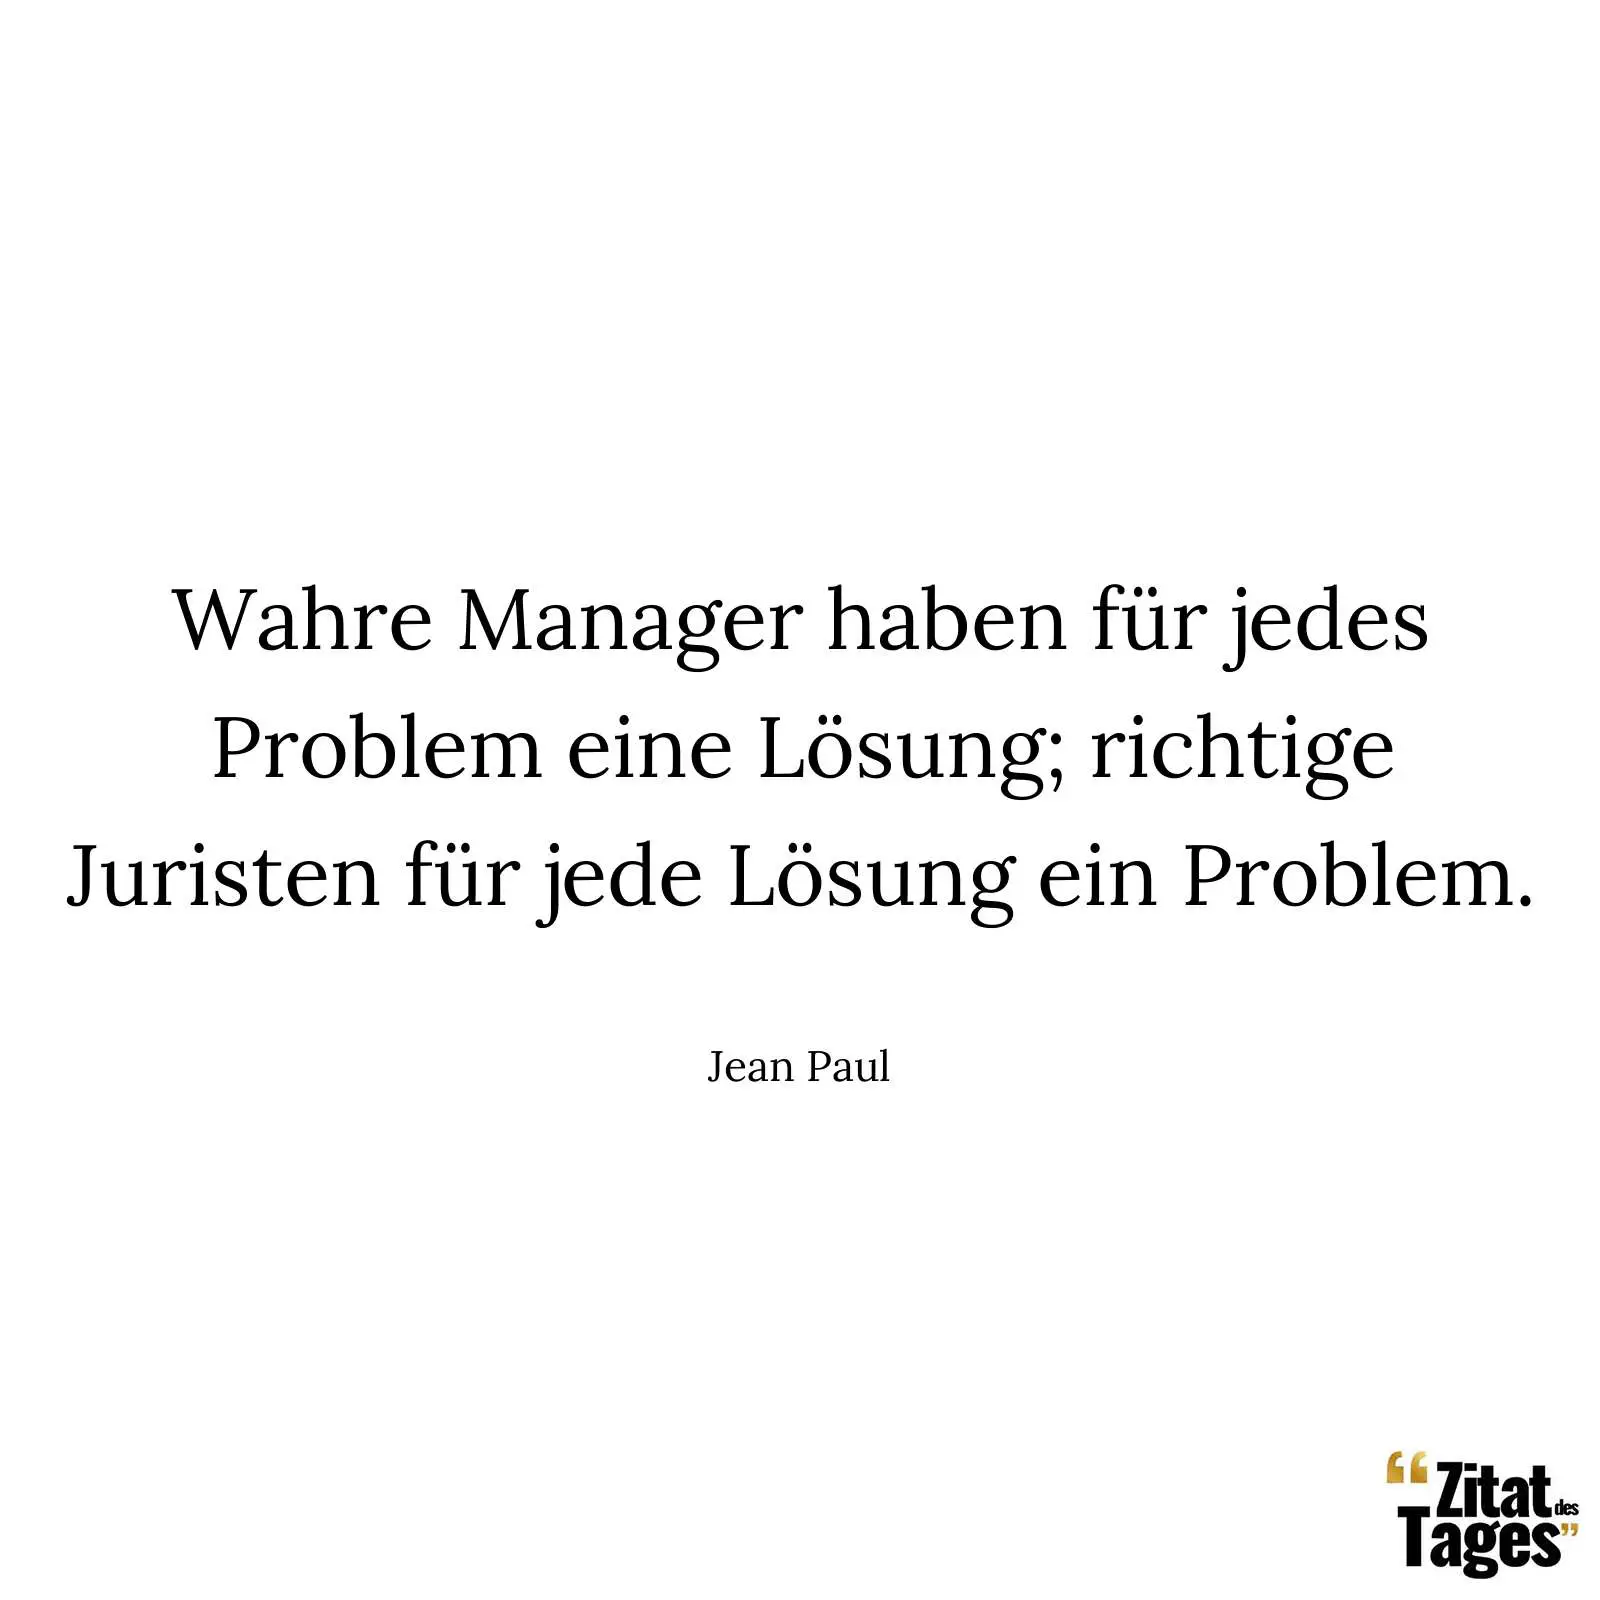 Wahre Manager haben für jedes Problem eine Lösung; richtige Juristen für jede Lösung ein Problem. - Jean Paul